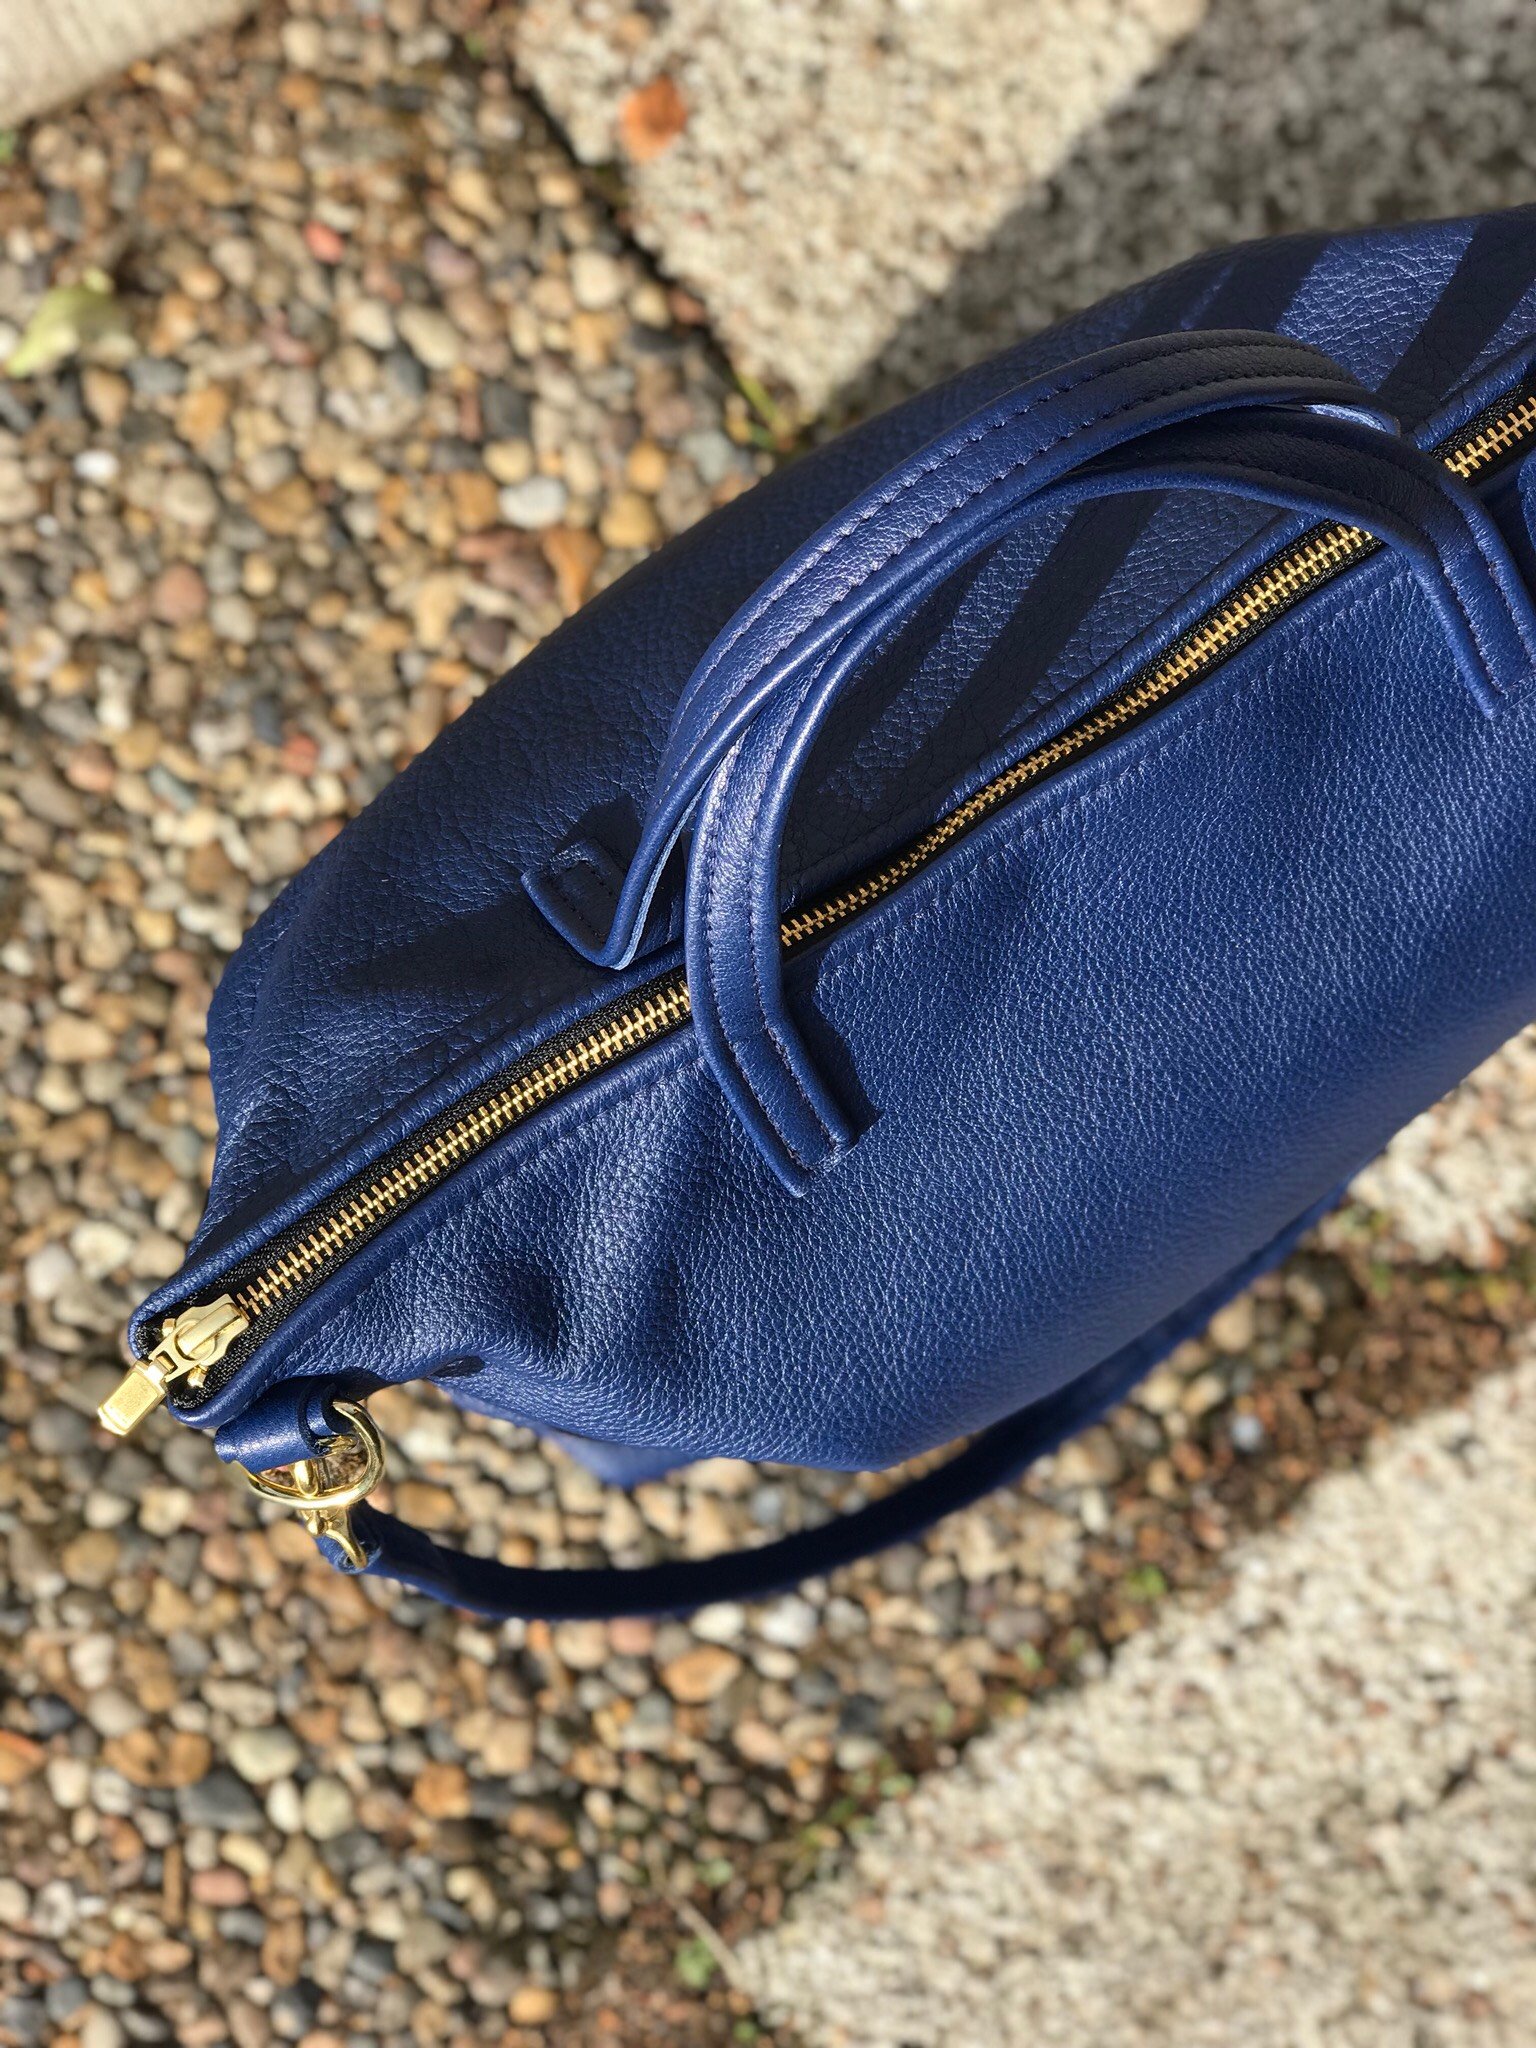 New Tote Bag w/ Zipper - Blue